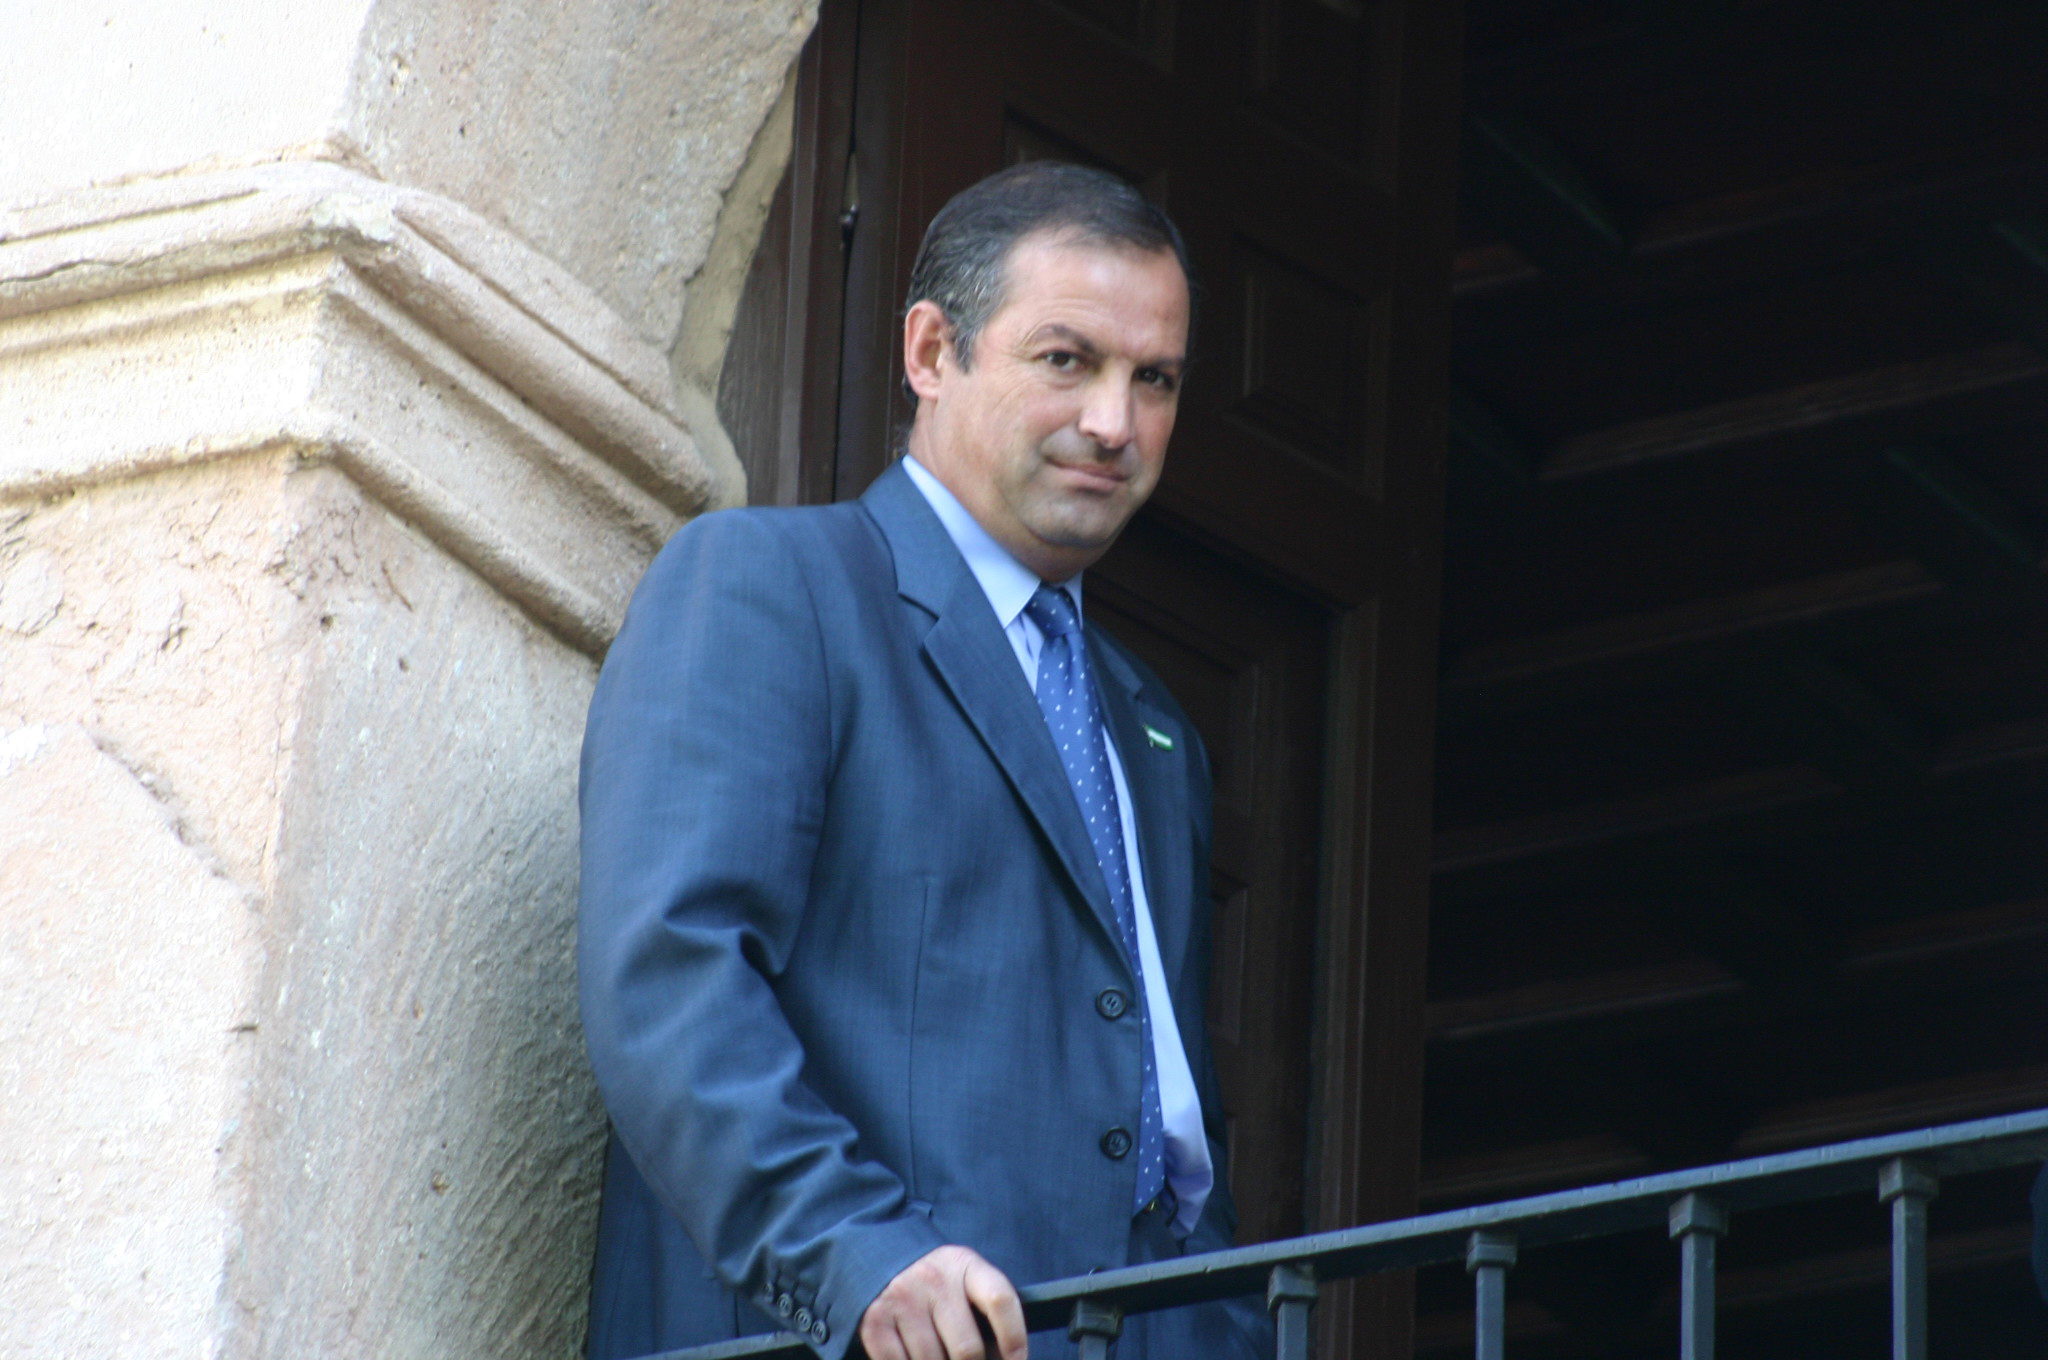 El ex alcalde de Ronda Antonio Marn Lara, fallecido en 2019.